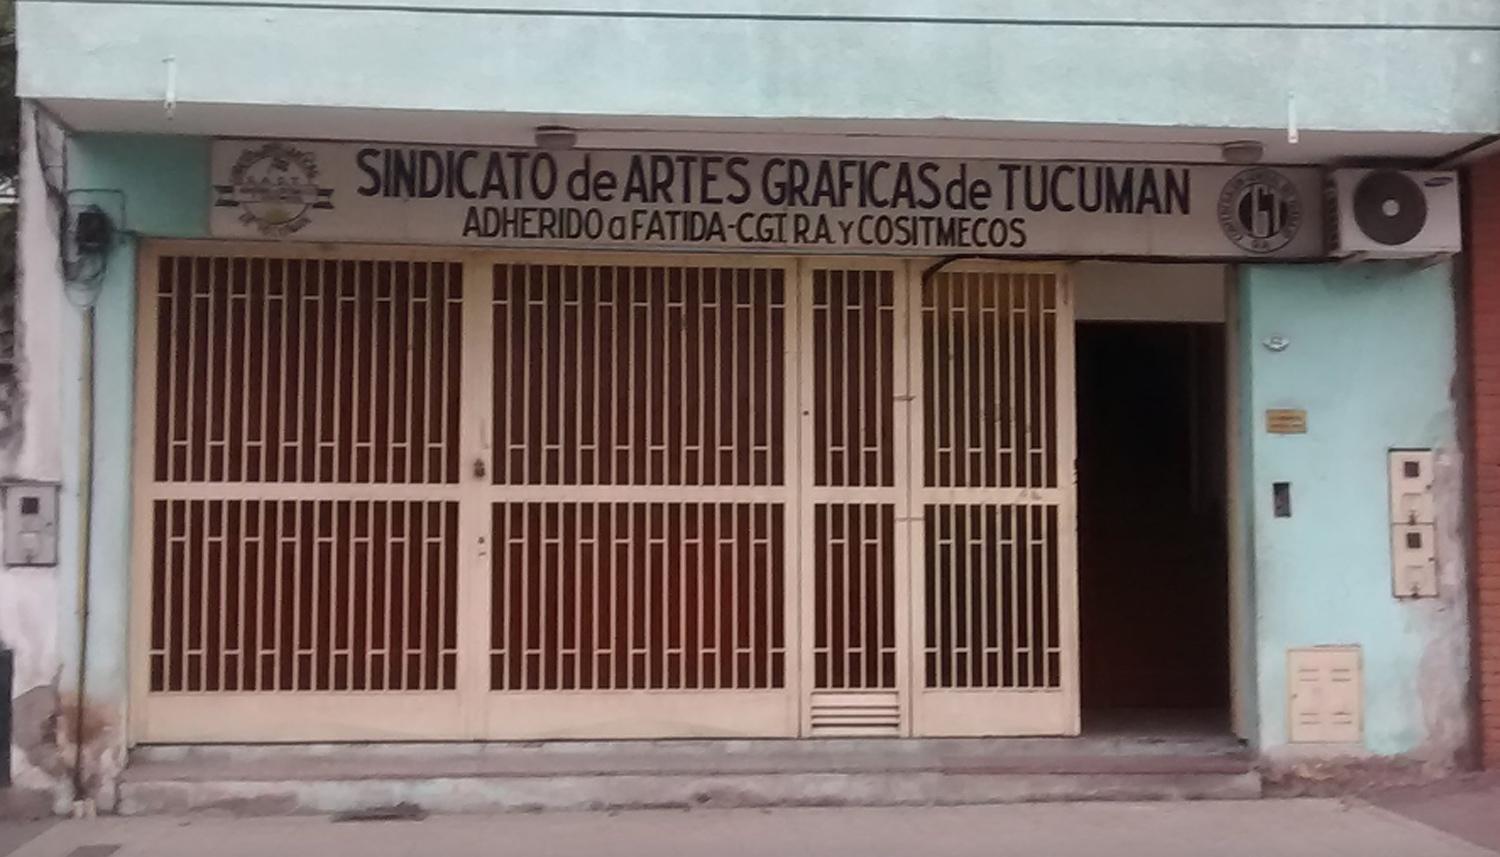 SINDICATO DE ARTES GRAFICAS. Lugar donde se realizó el acto. CAPTURA DE GOOGLE